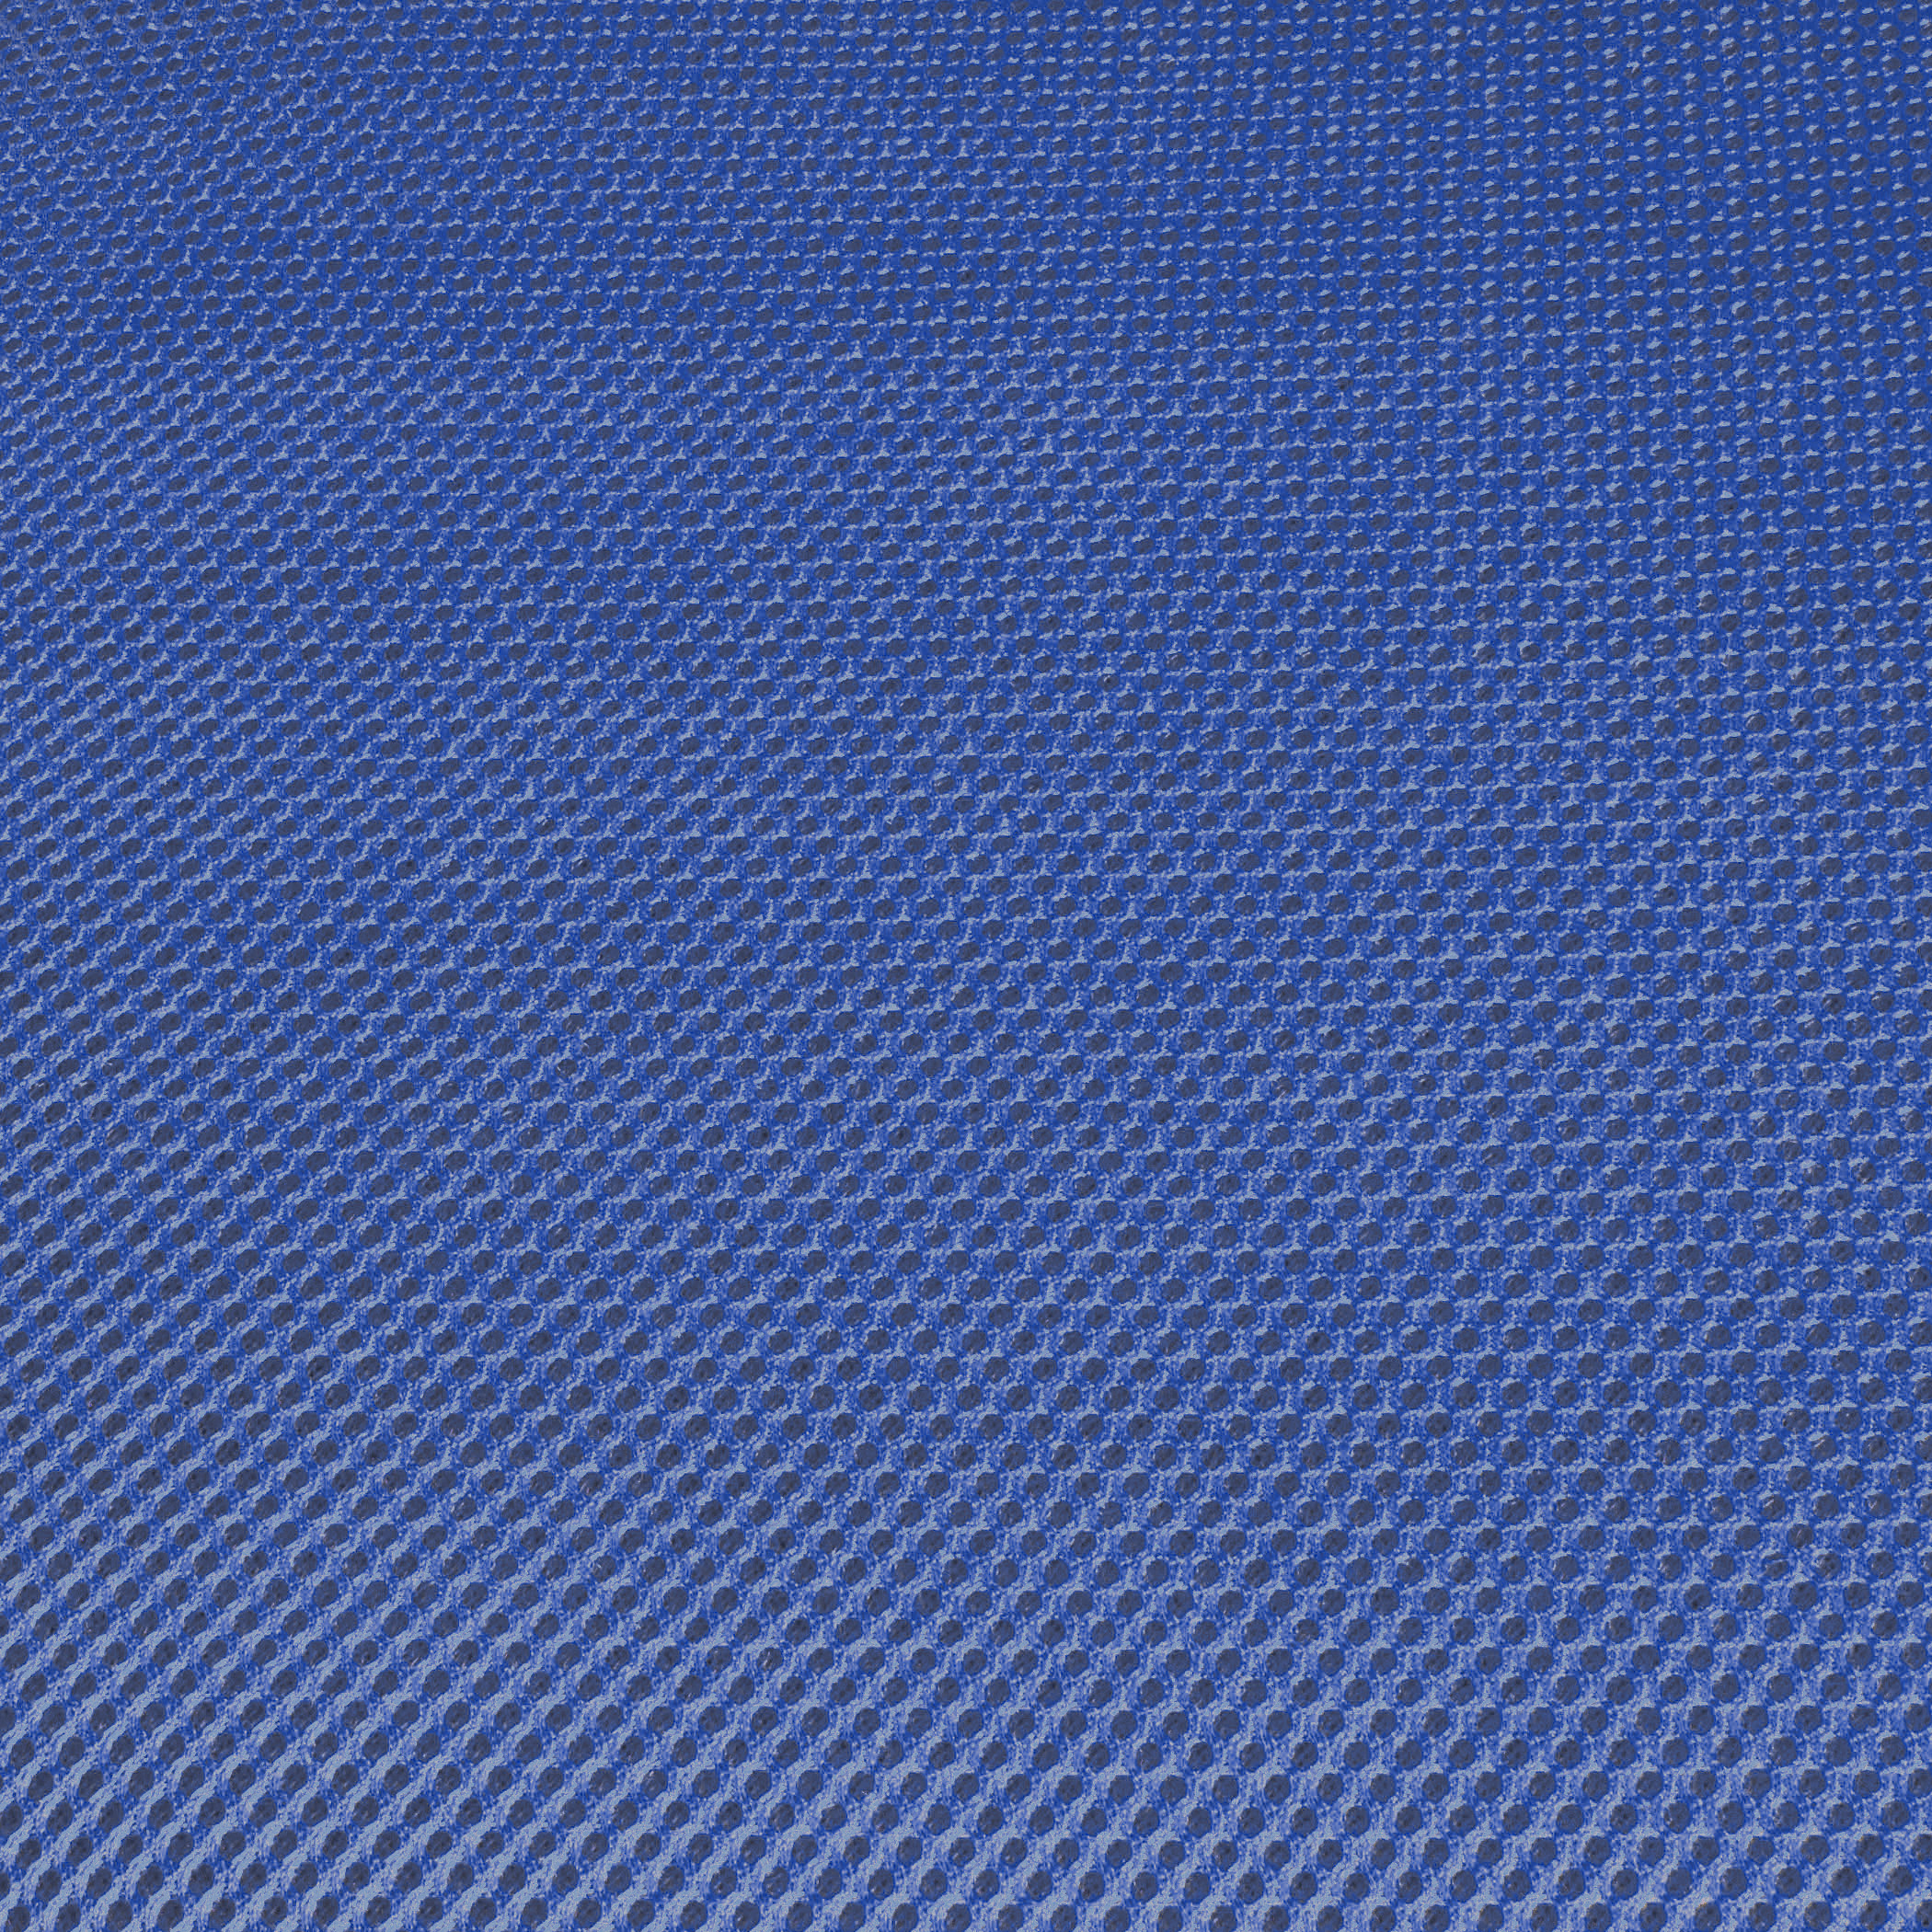 Текстура джинсов. Оксфорд 600 голубой. Синяя ткань. Текстура джинсовой ткани. Фактура джинсовой ткани.